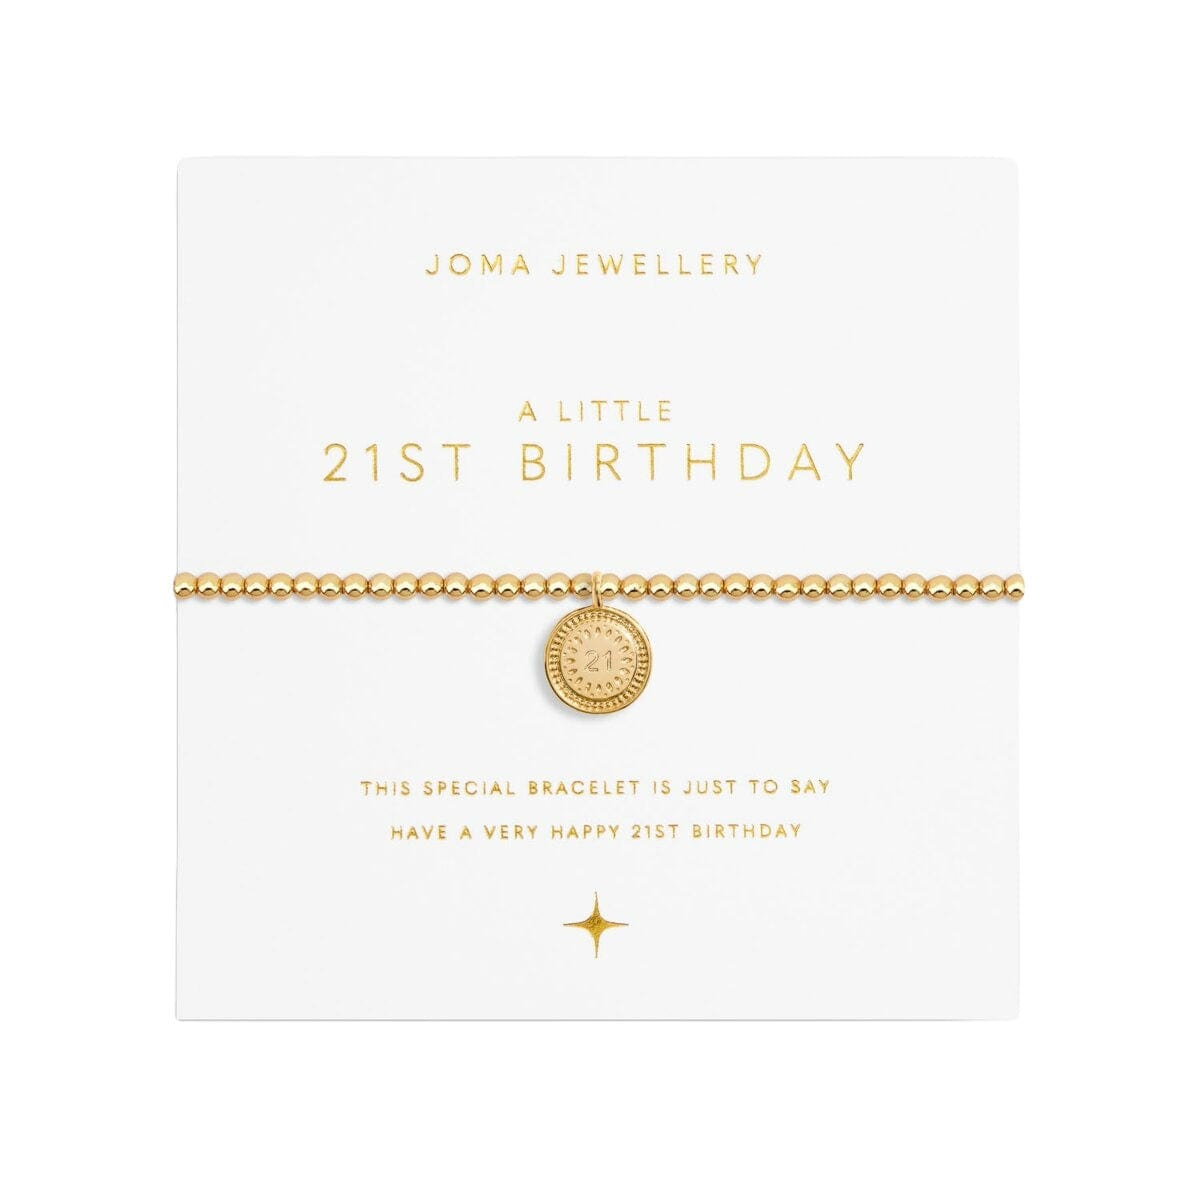 Joma Jewellery Bracelet Joma Jewellery Gold Plated Bracelet - A Little 21st Birthday